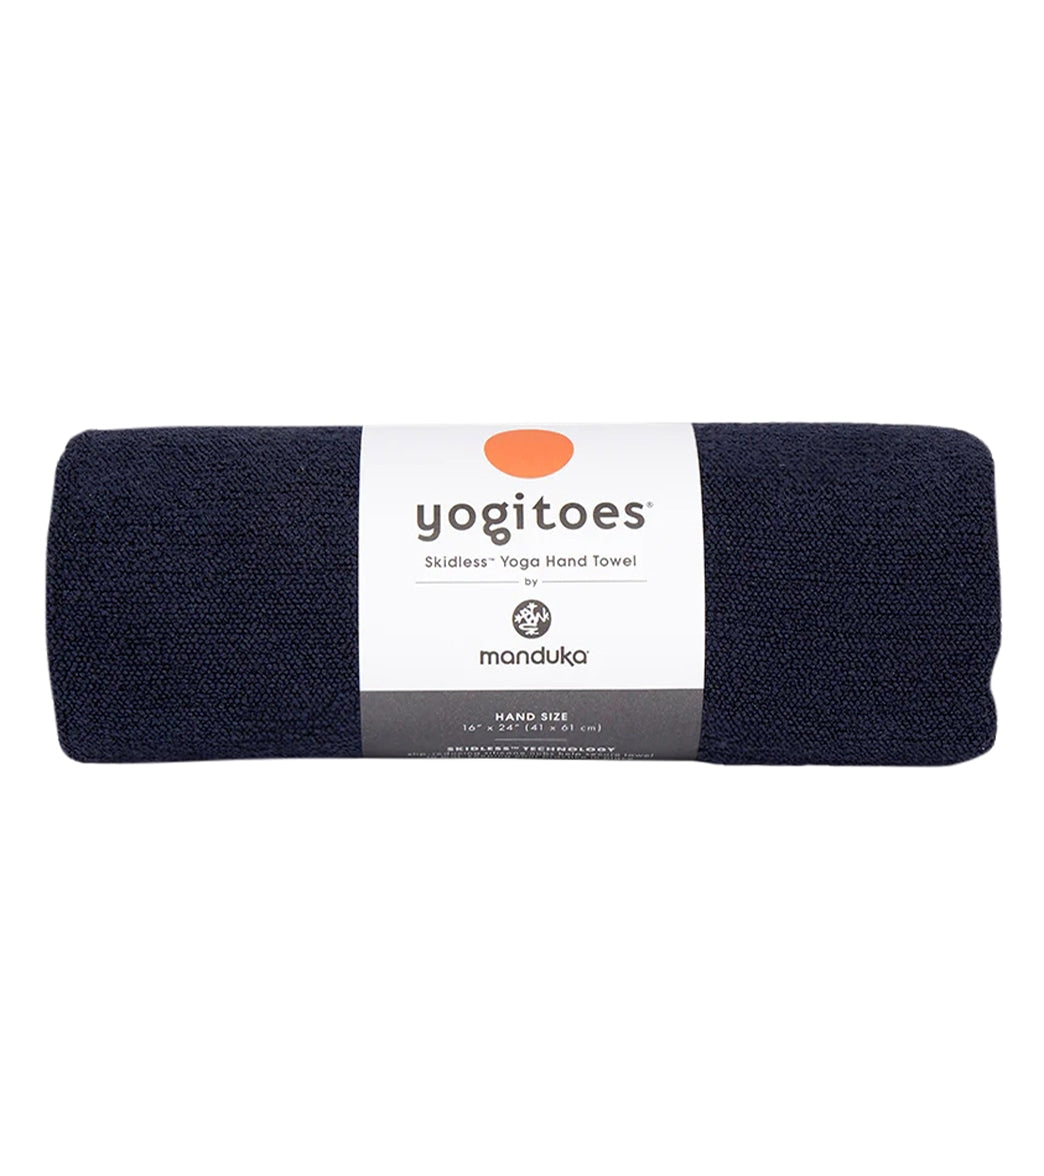 Manduka yogitoes Yoga Mat Towel